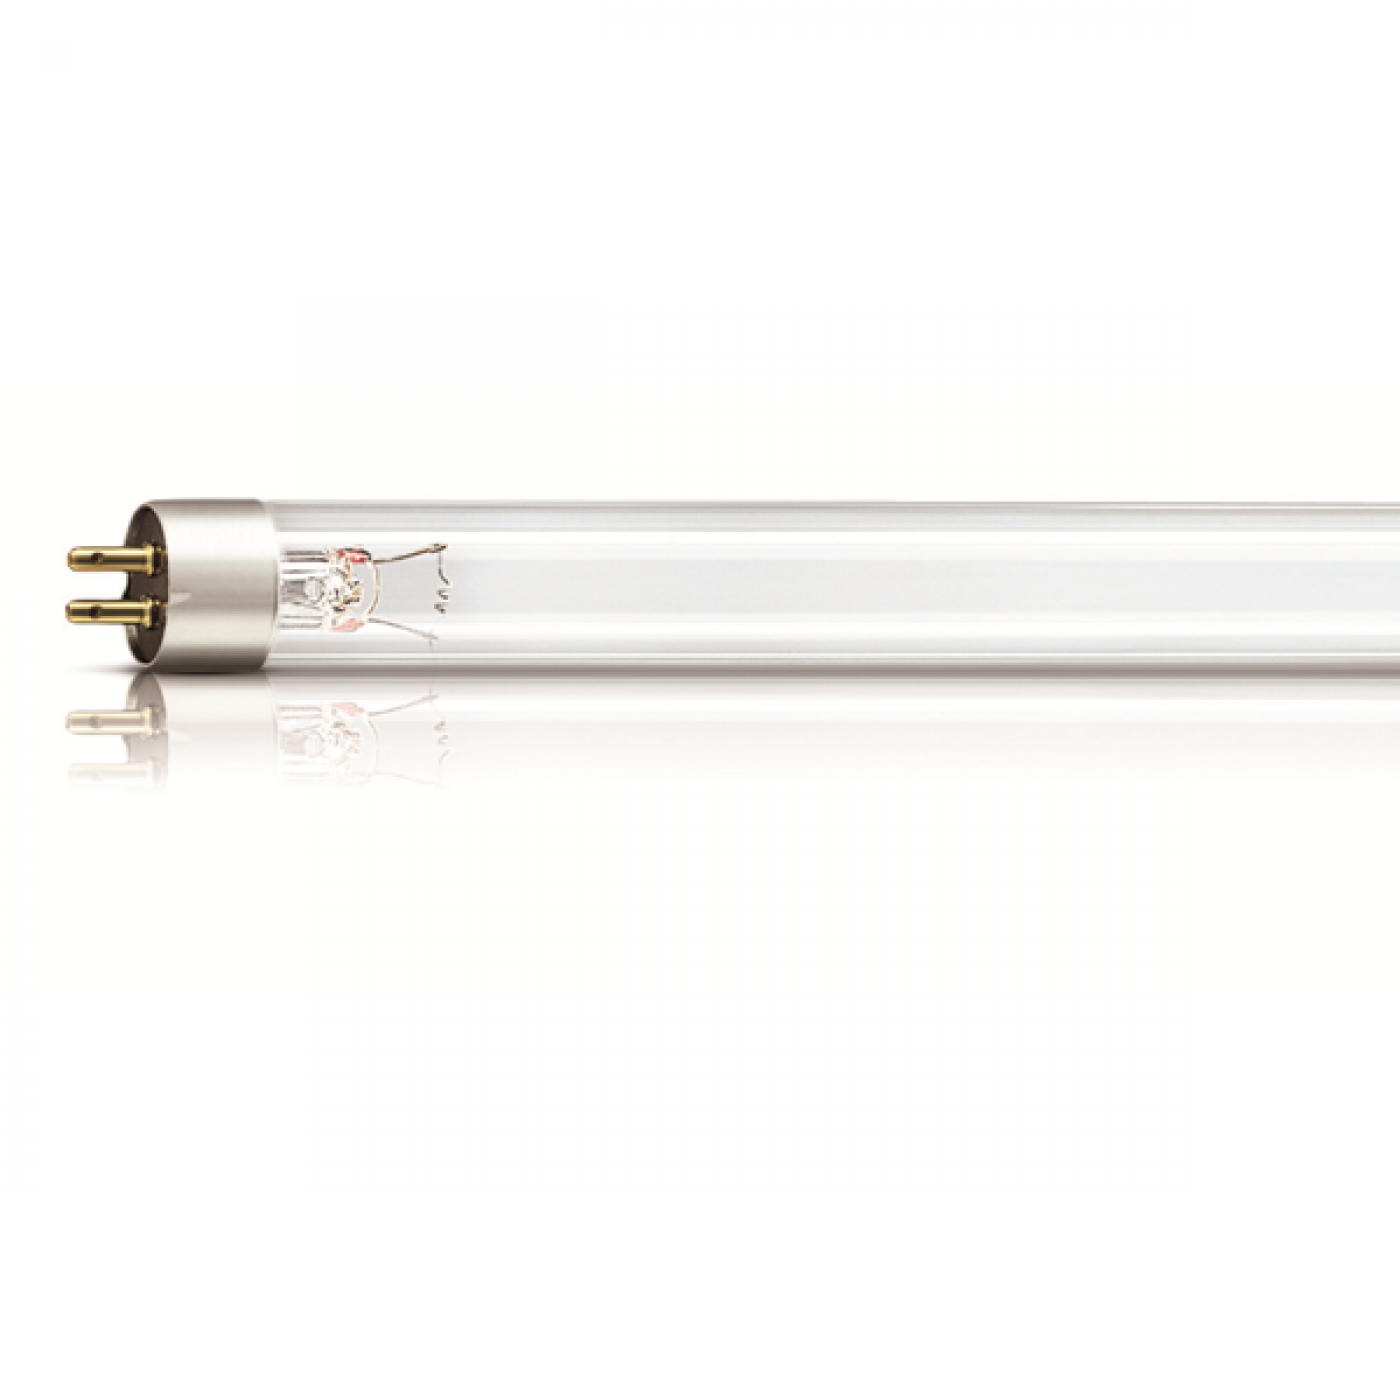 Lampada 11 W UV PHILIPS per sterilizzatore Depuratore Purificazione Acqua Osmosi 